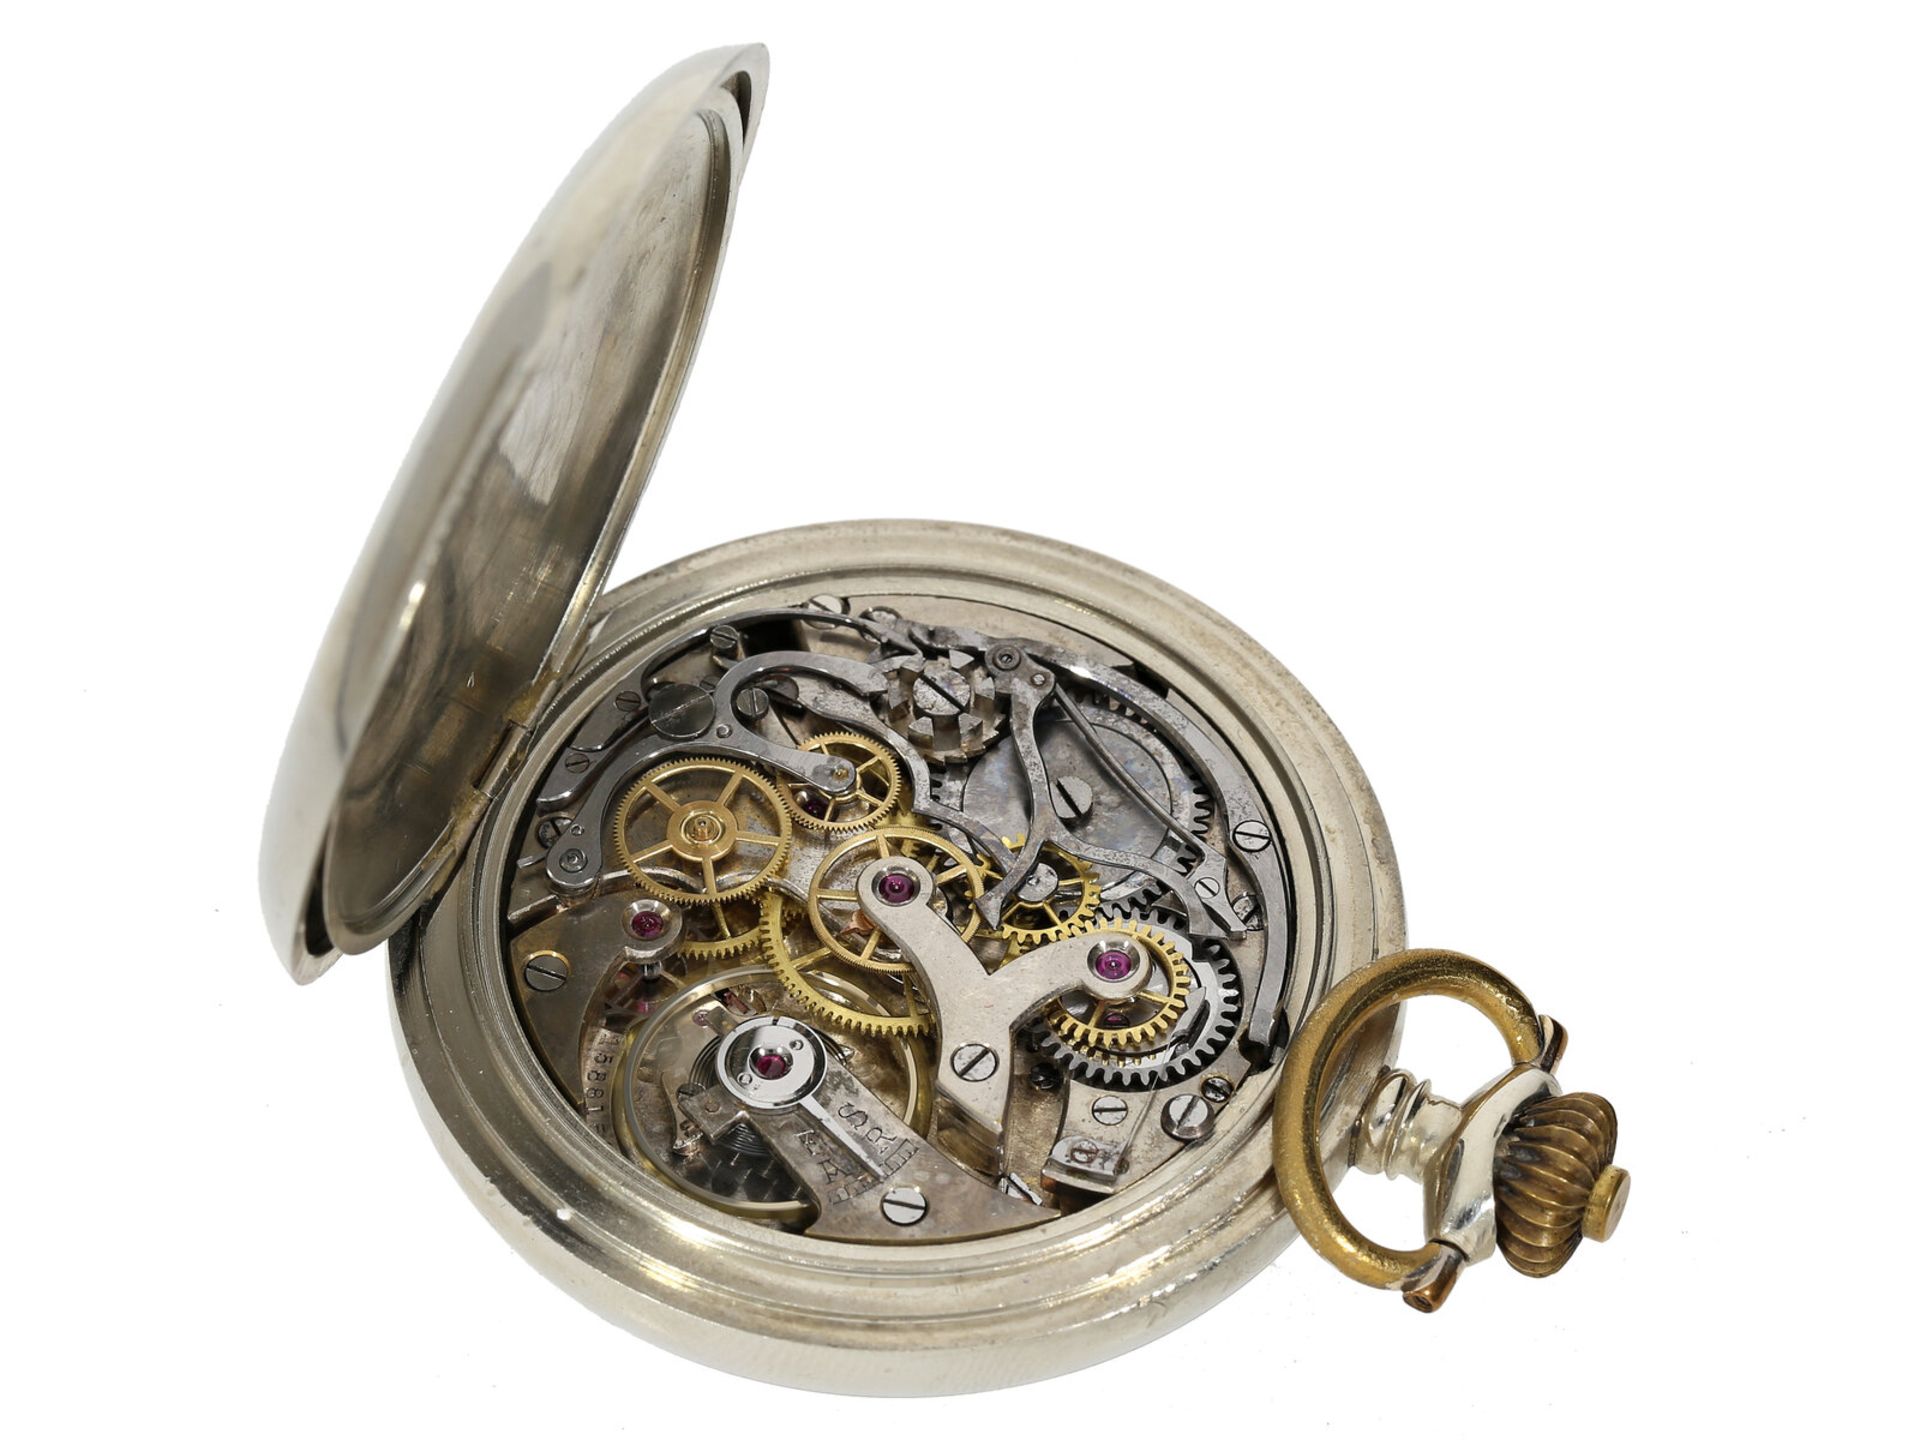 Taschenuhr: Alpina-Chronograph mit 30-Minuten-Zähler und schwarzem Blatt, um 1925 - Image 4 of 4